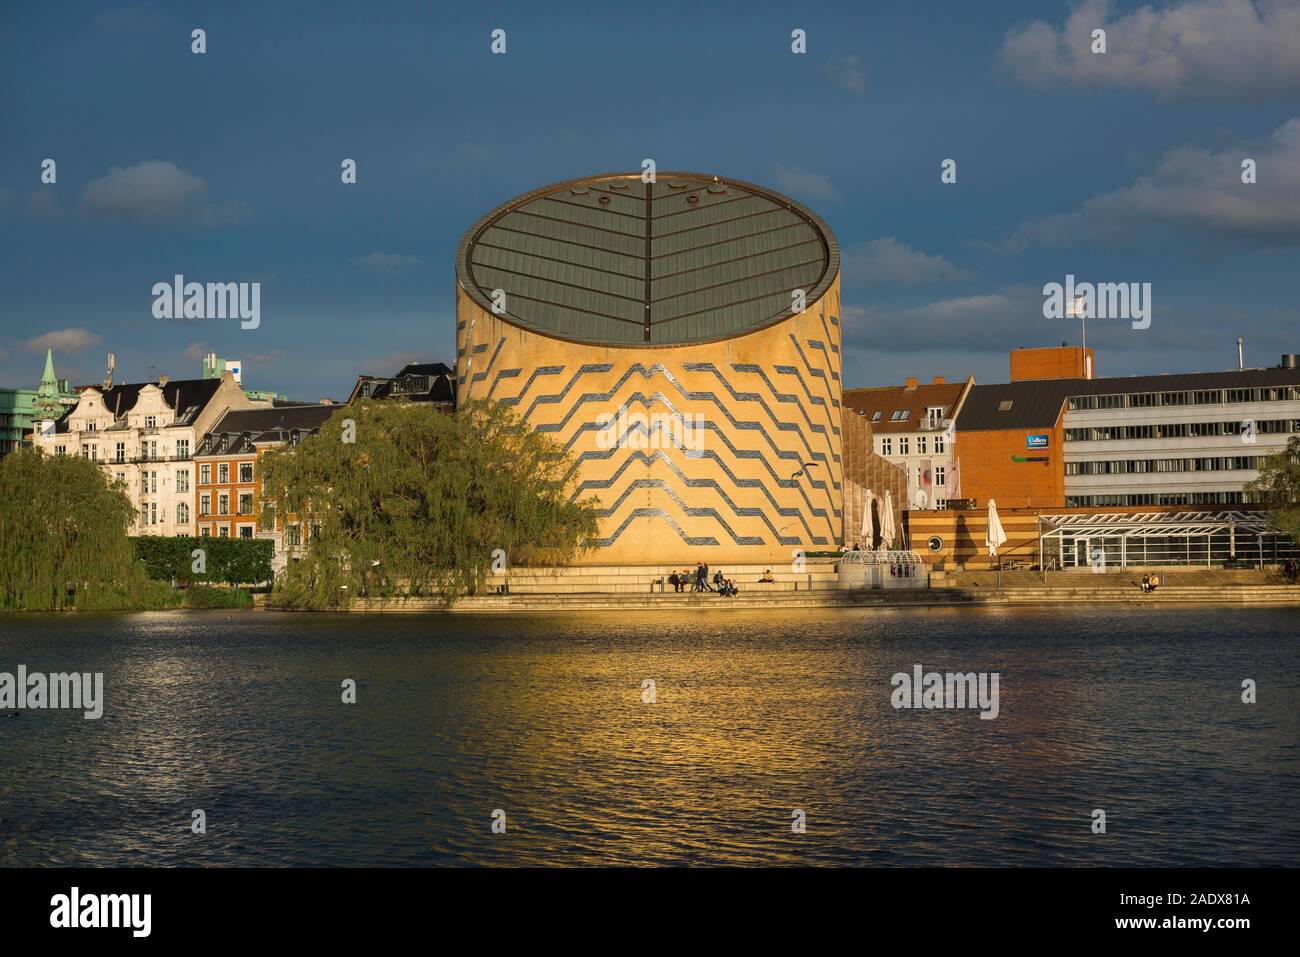 Copenhague planétarium, vue du Planétarium Tycho Brahe (1989) situé à côté du lac Sankt Jørgens Sø, dans le centre de Copenhague, Danemark. Banque D'Images